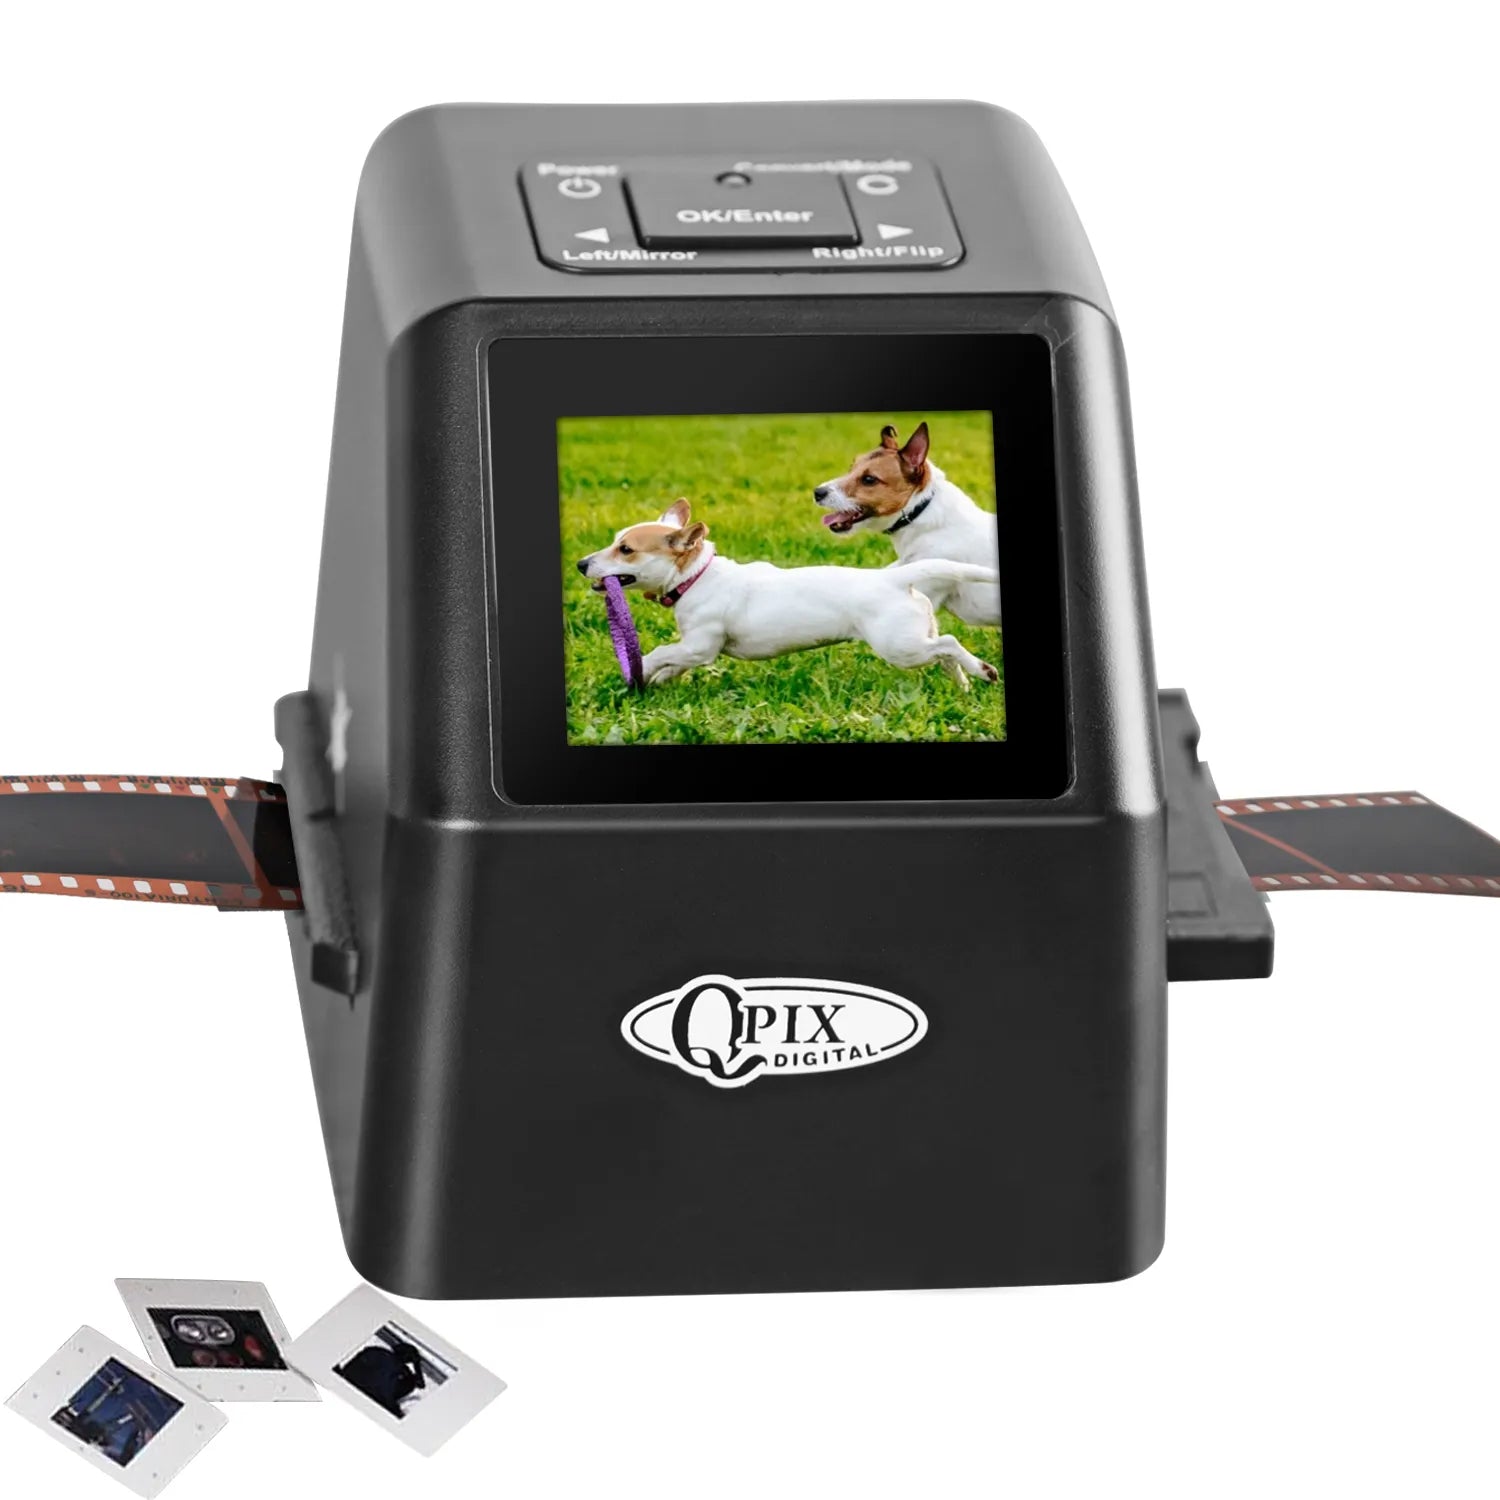 Portable Digital Film Scanner Convert 35mm 135 110 126KPK Super 8 Slides & Negatives to 22 Mega Pixels JPEG 2.4"LCD Screen